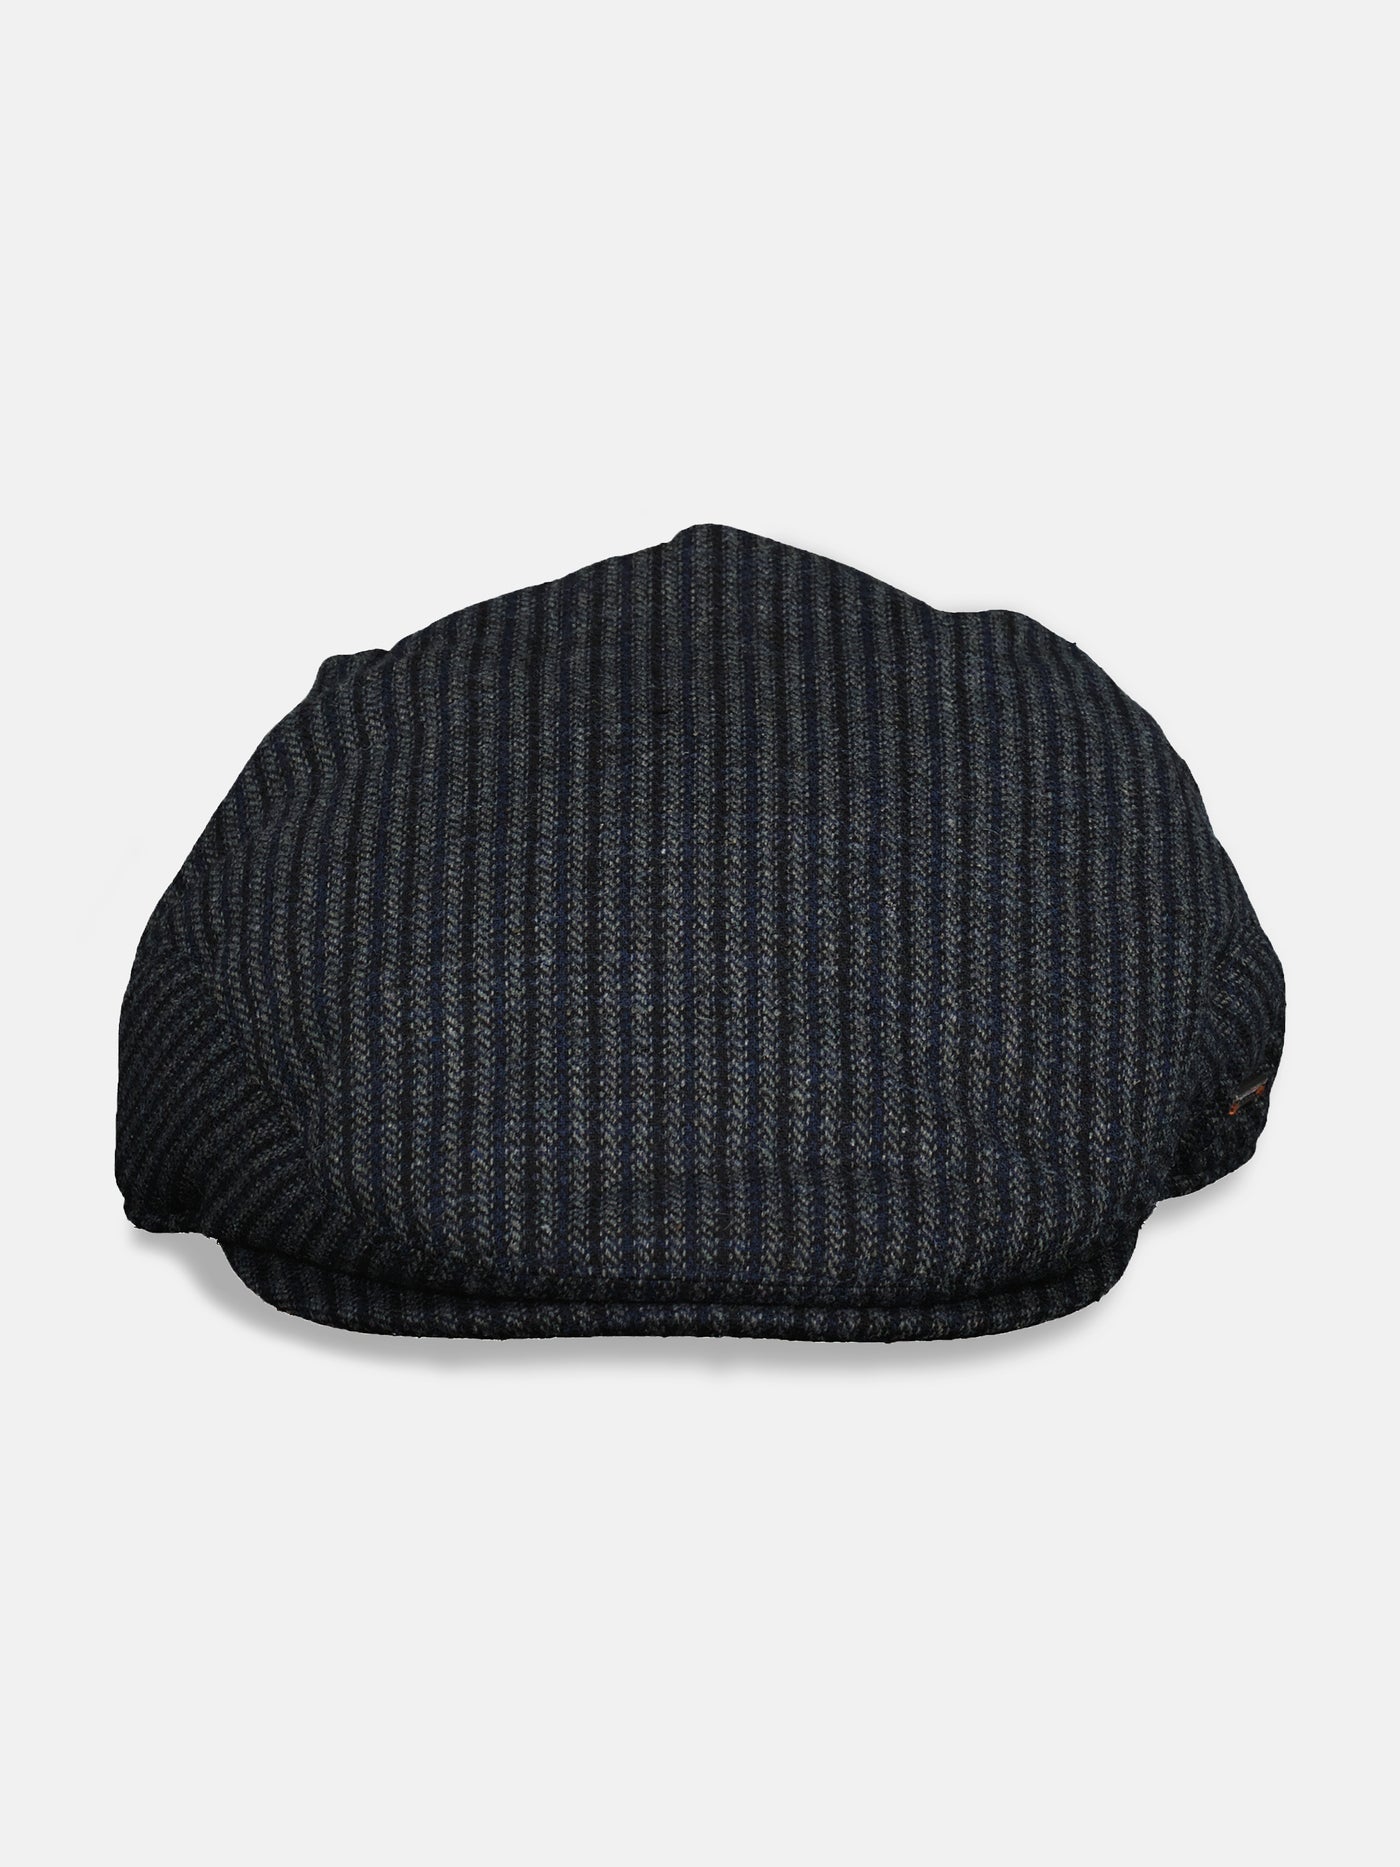 Flat cap *Gatsby*, striped